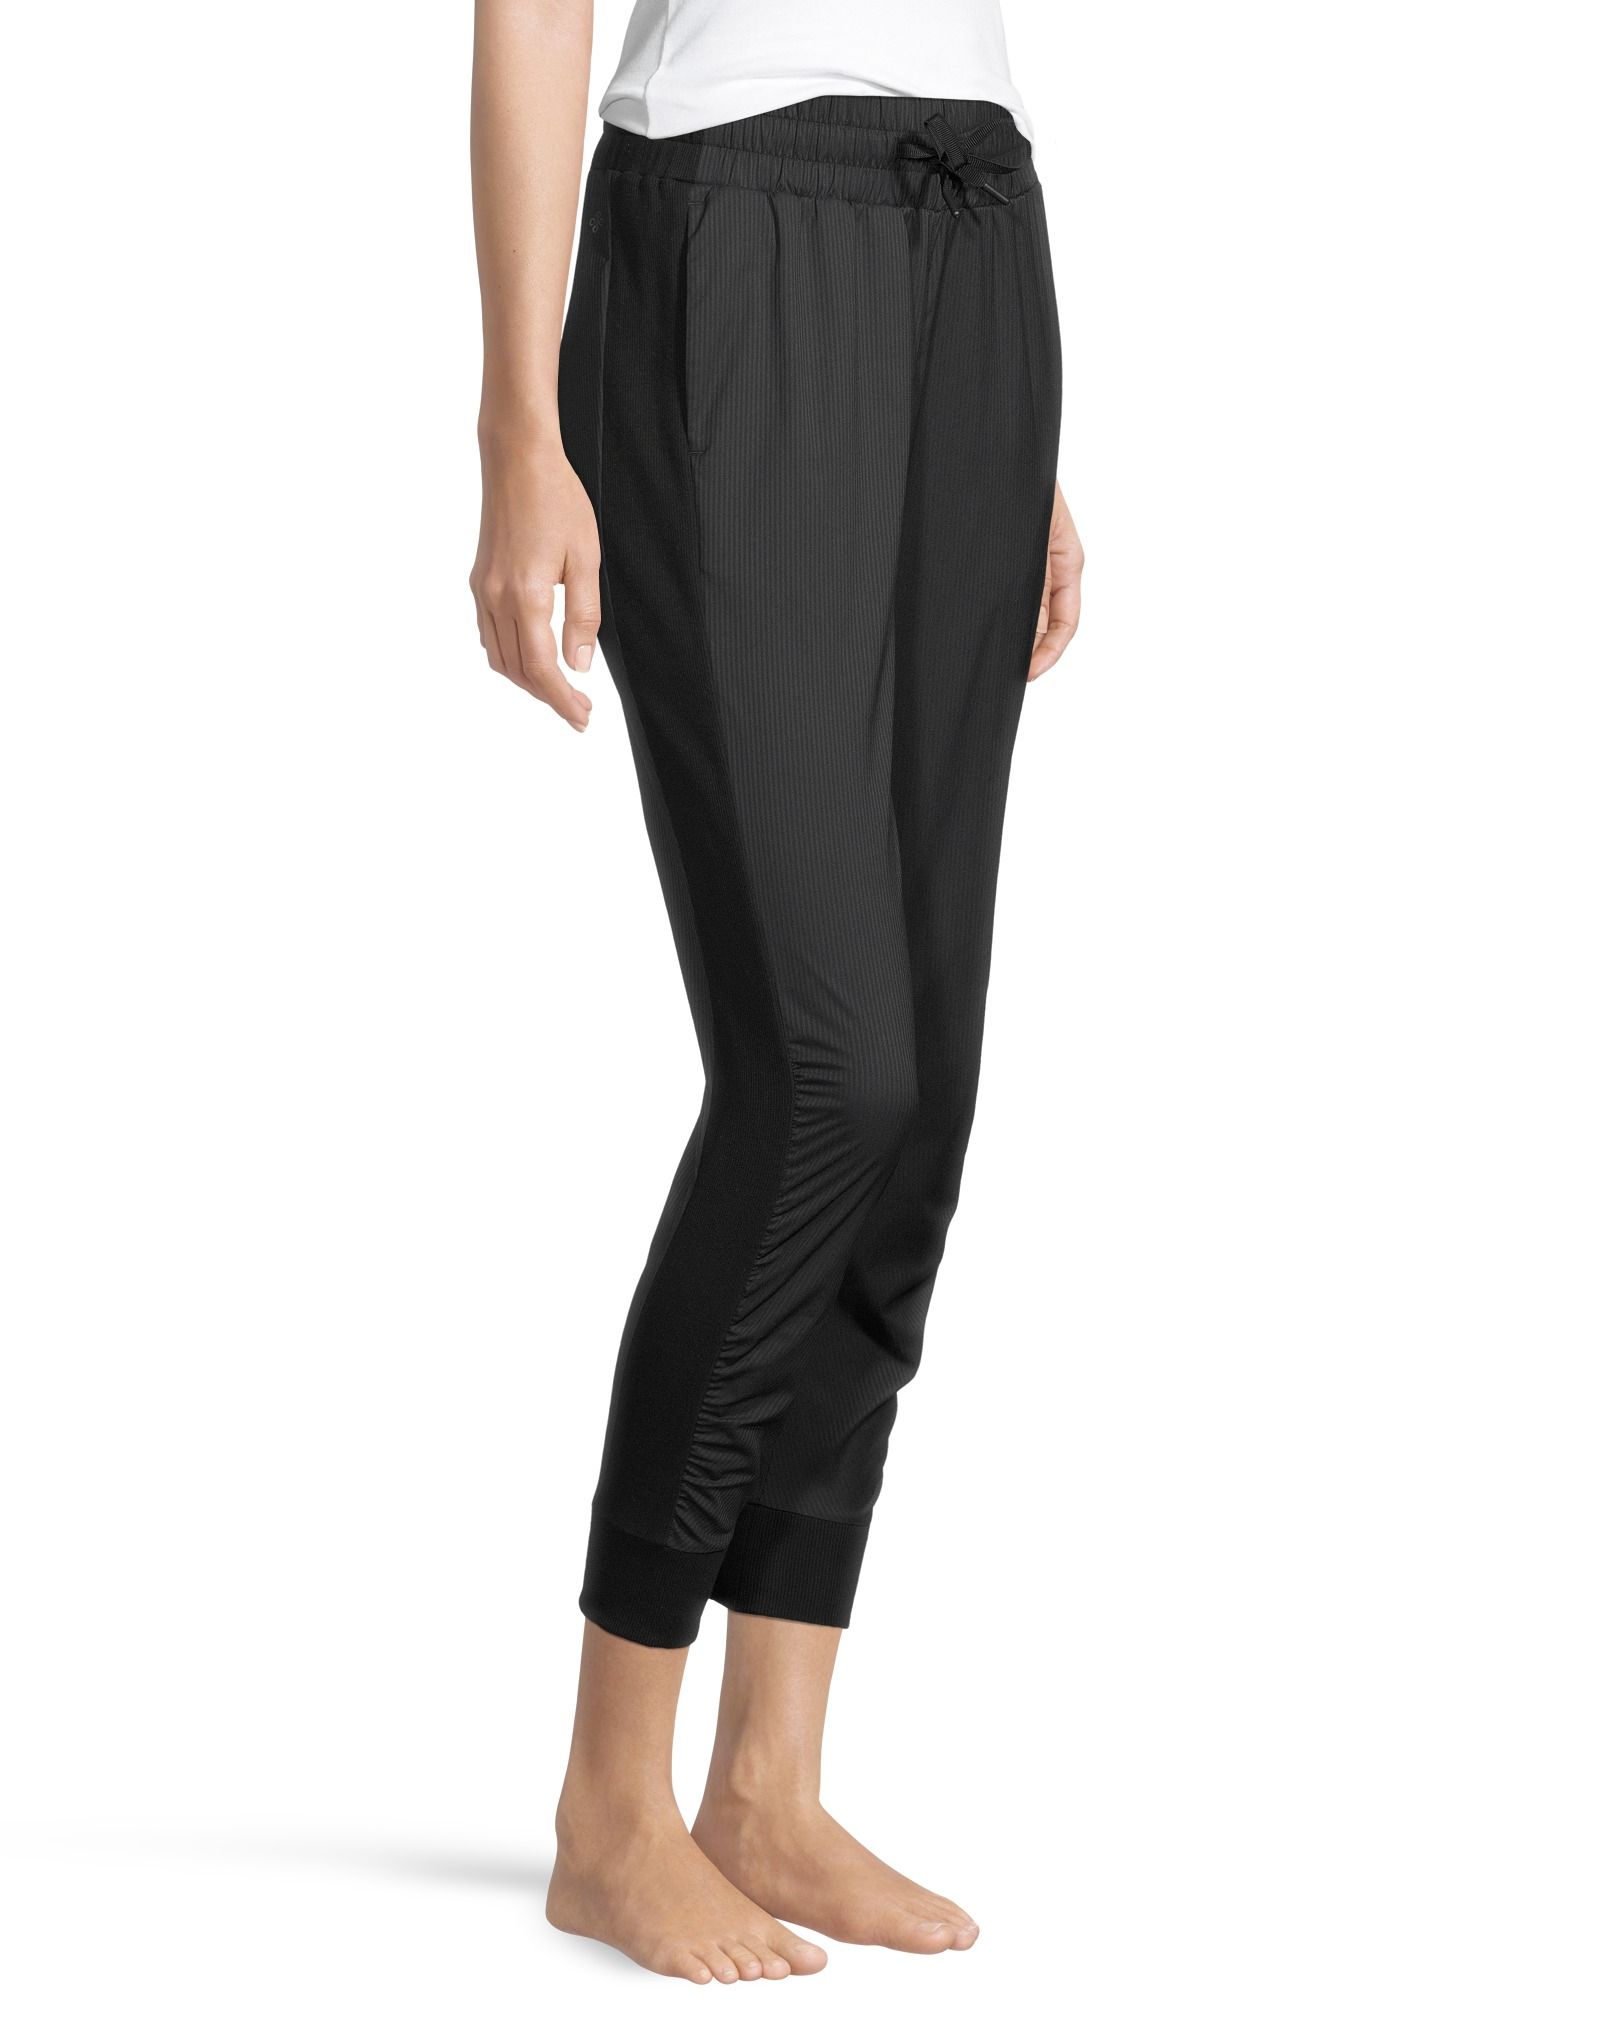 Denver Hayes, Pants & Jumpsuits, New Curvetech Black Pullon Dress Pants  Size Xl